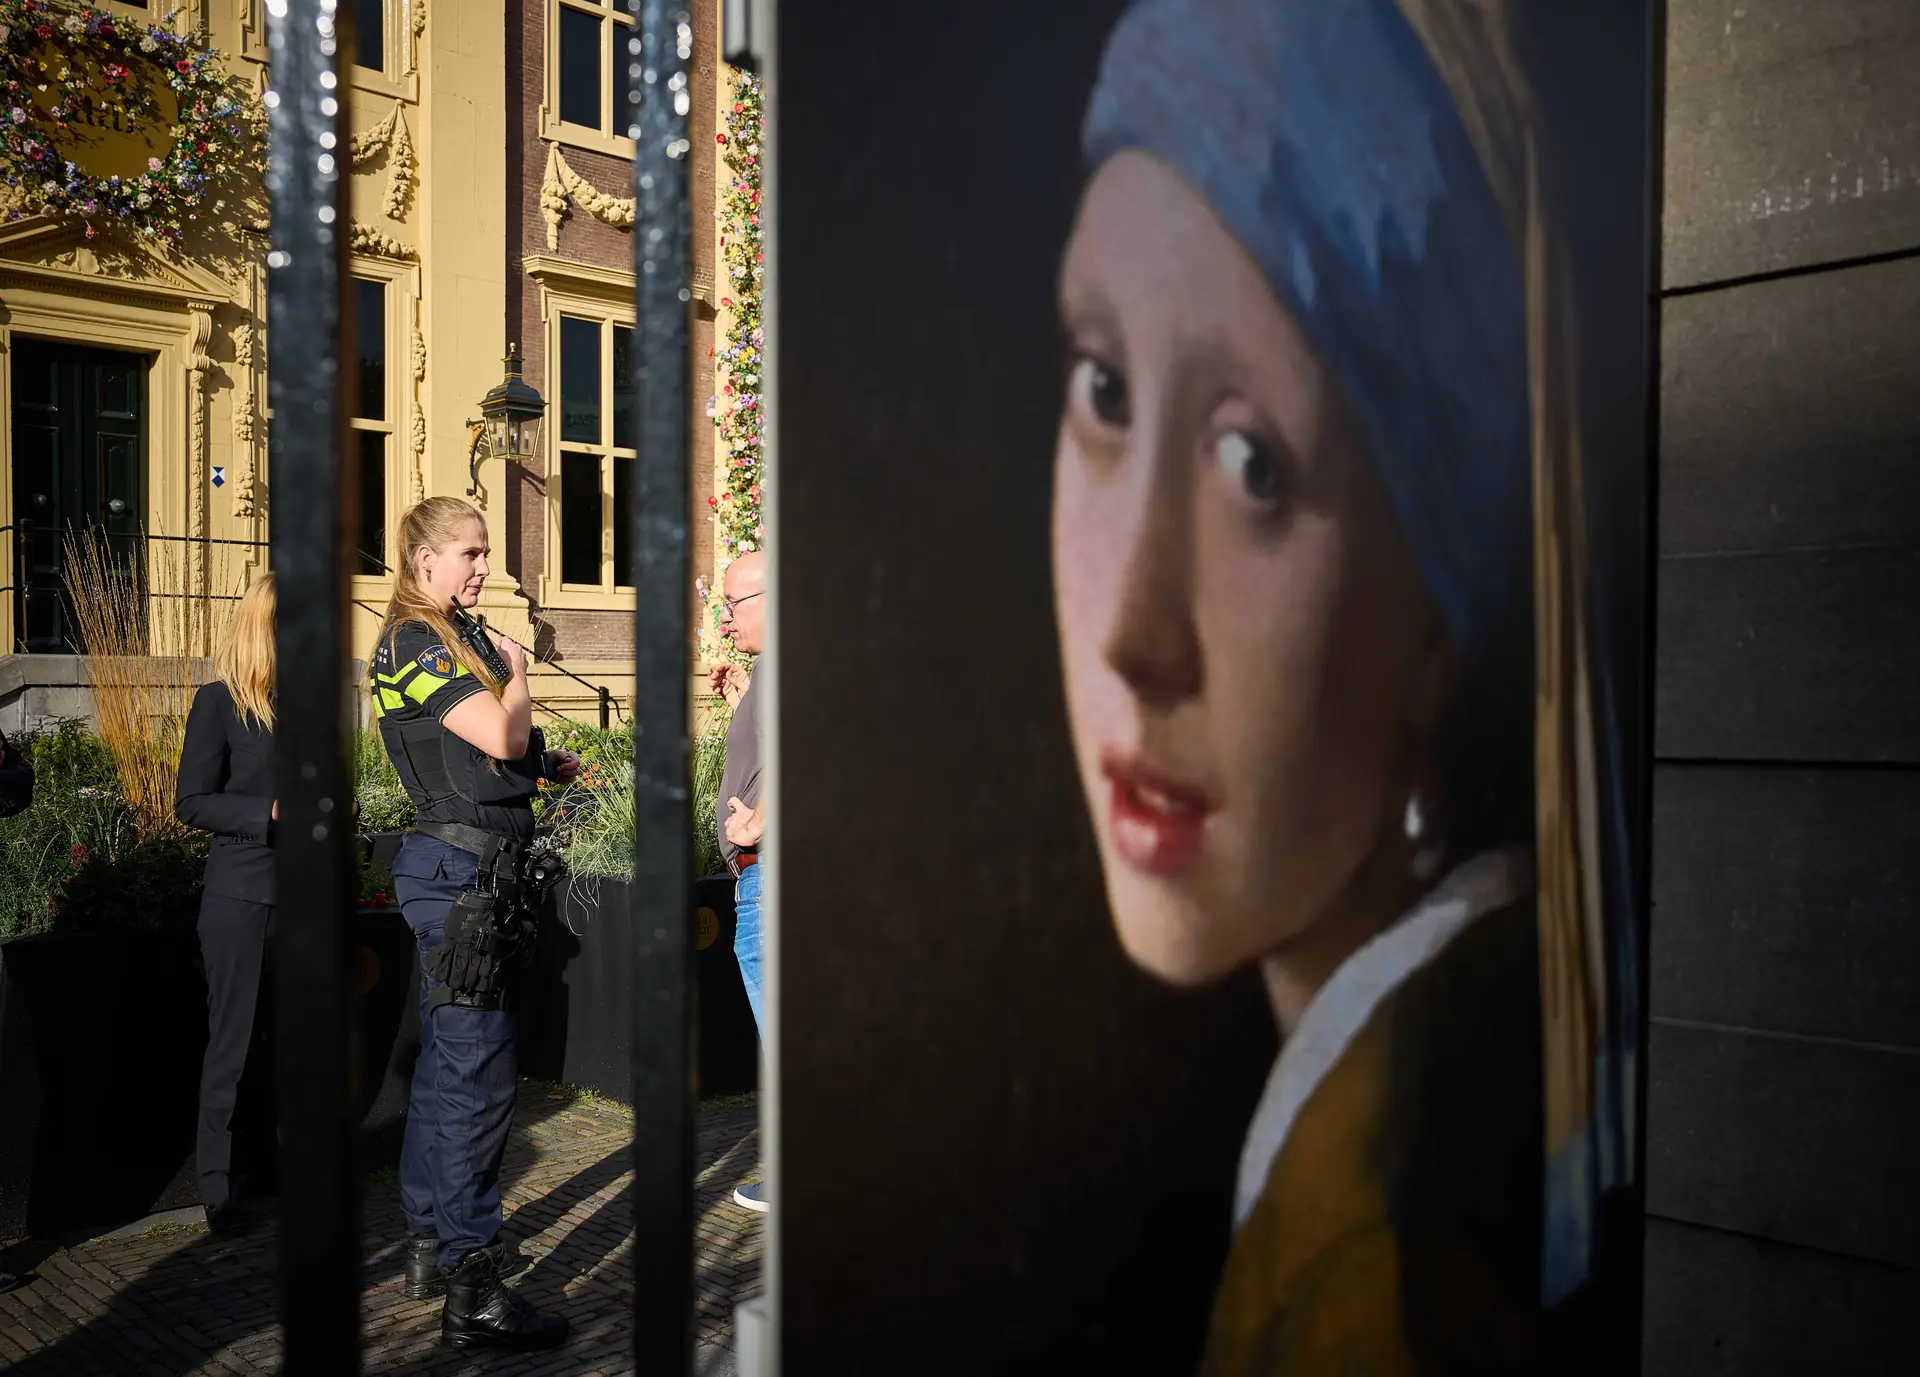 Mais uma obra atacada por ativistas ambientais: desta vez foi "Rapariga com Brinco de Pérola", de Vermeer